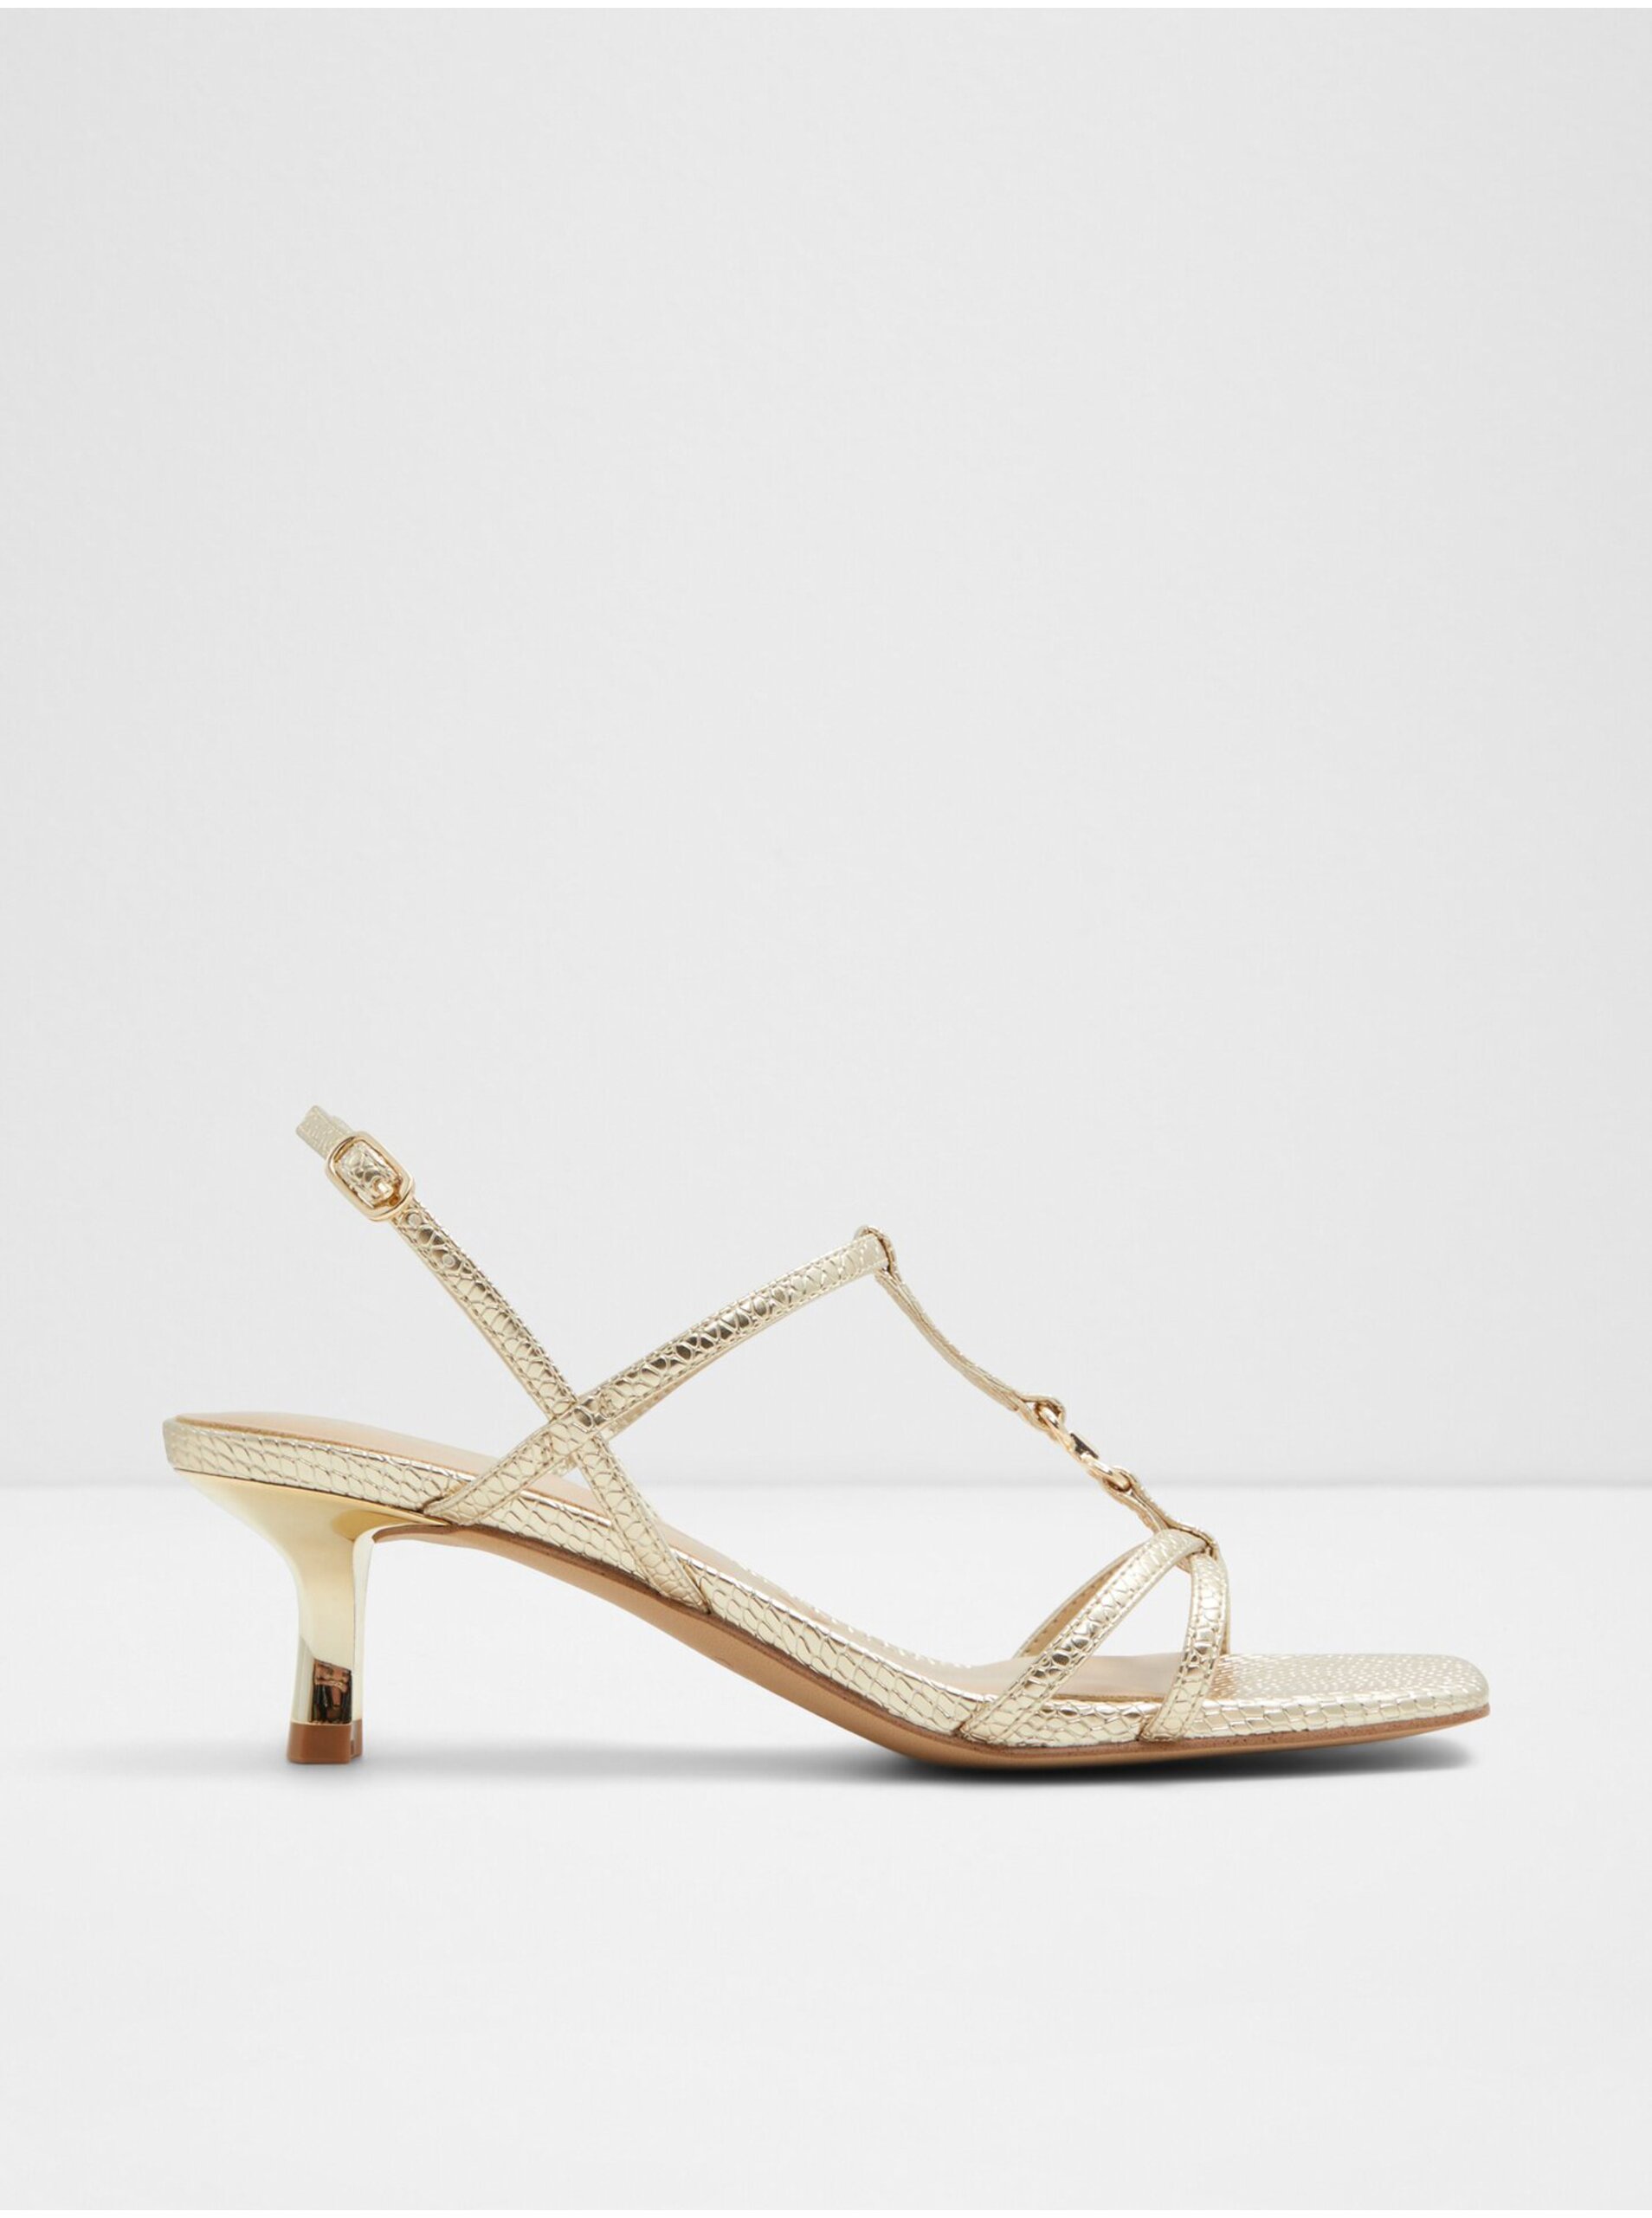 Lacno Dámske sandále na podpätku v zlatej farbe ALDO Josefina